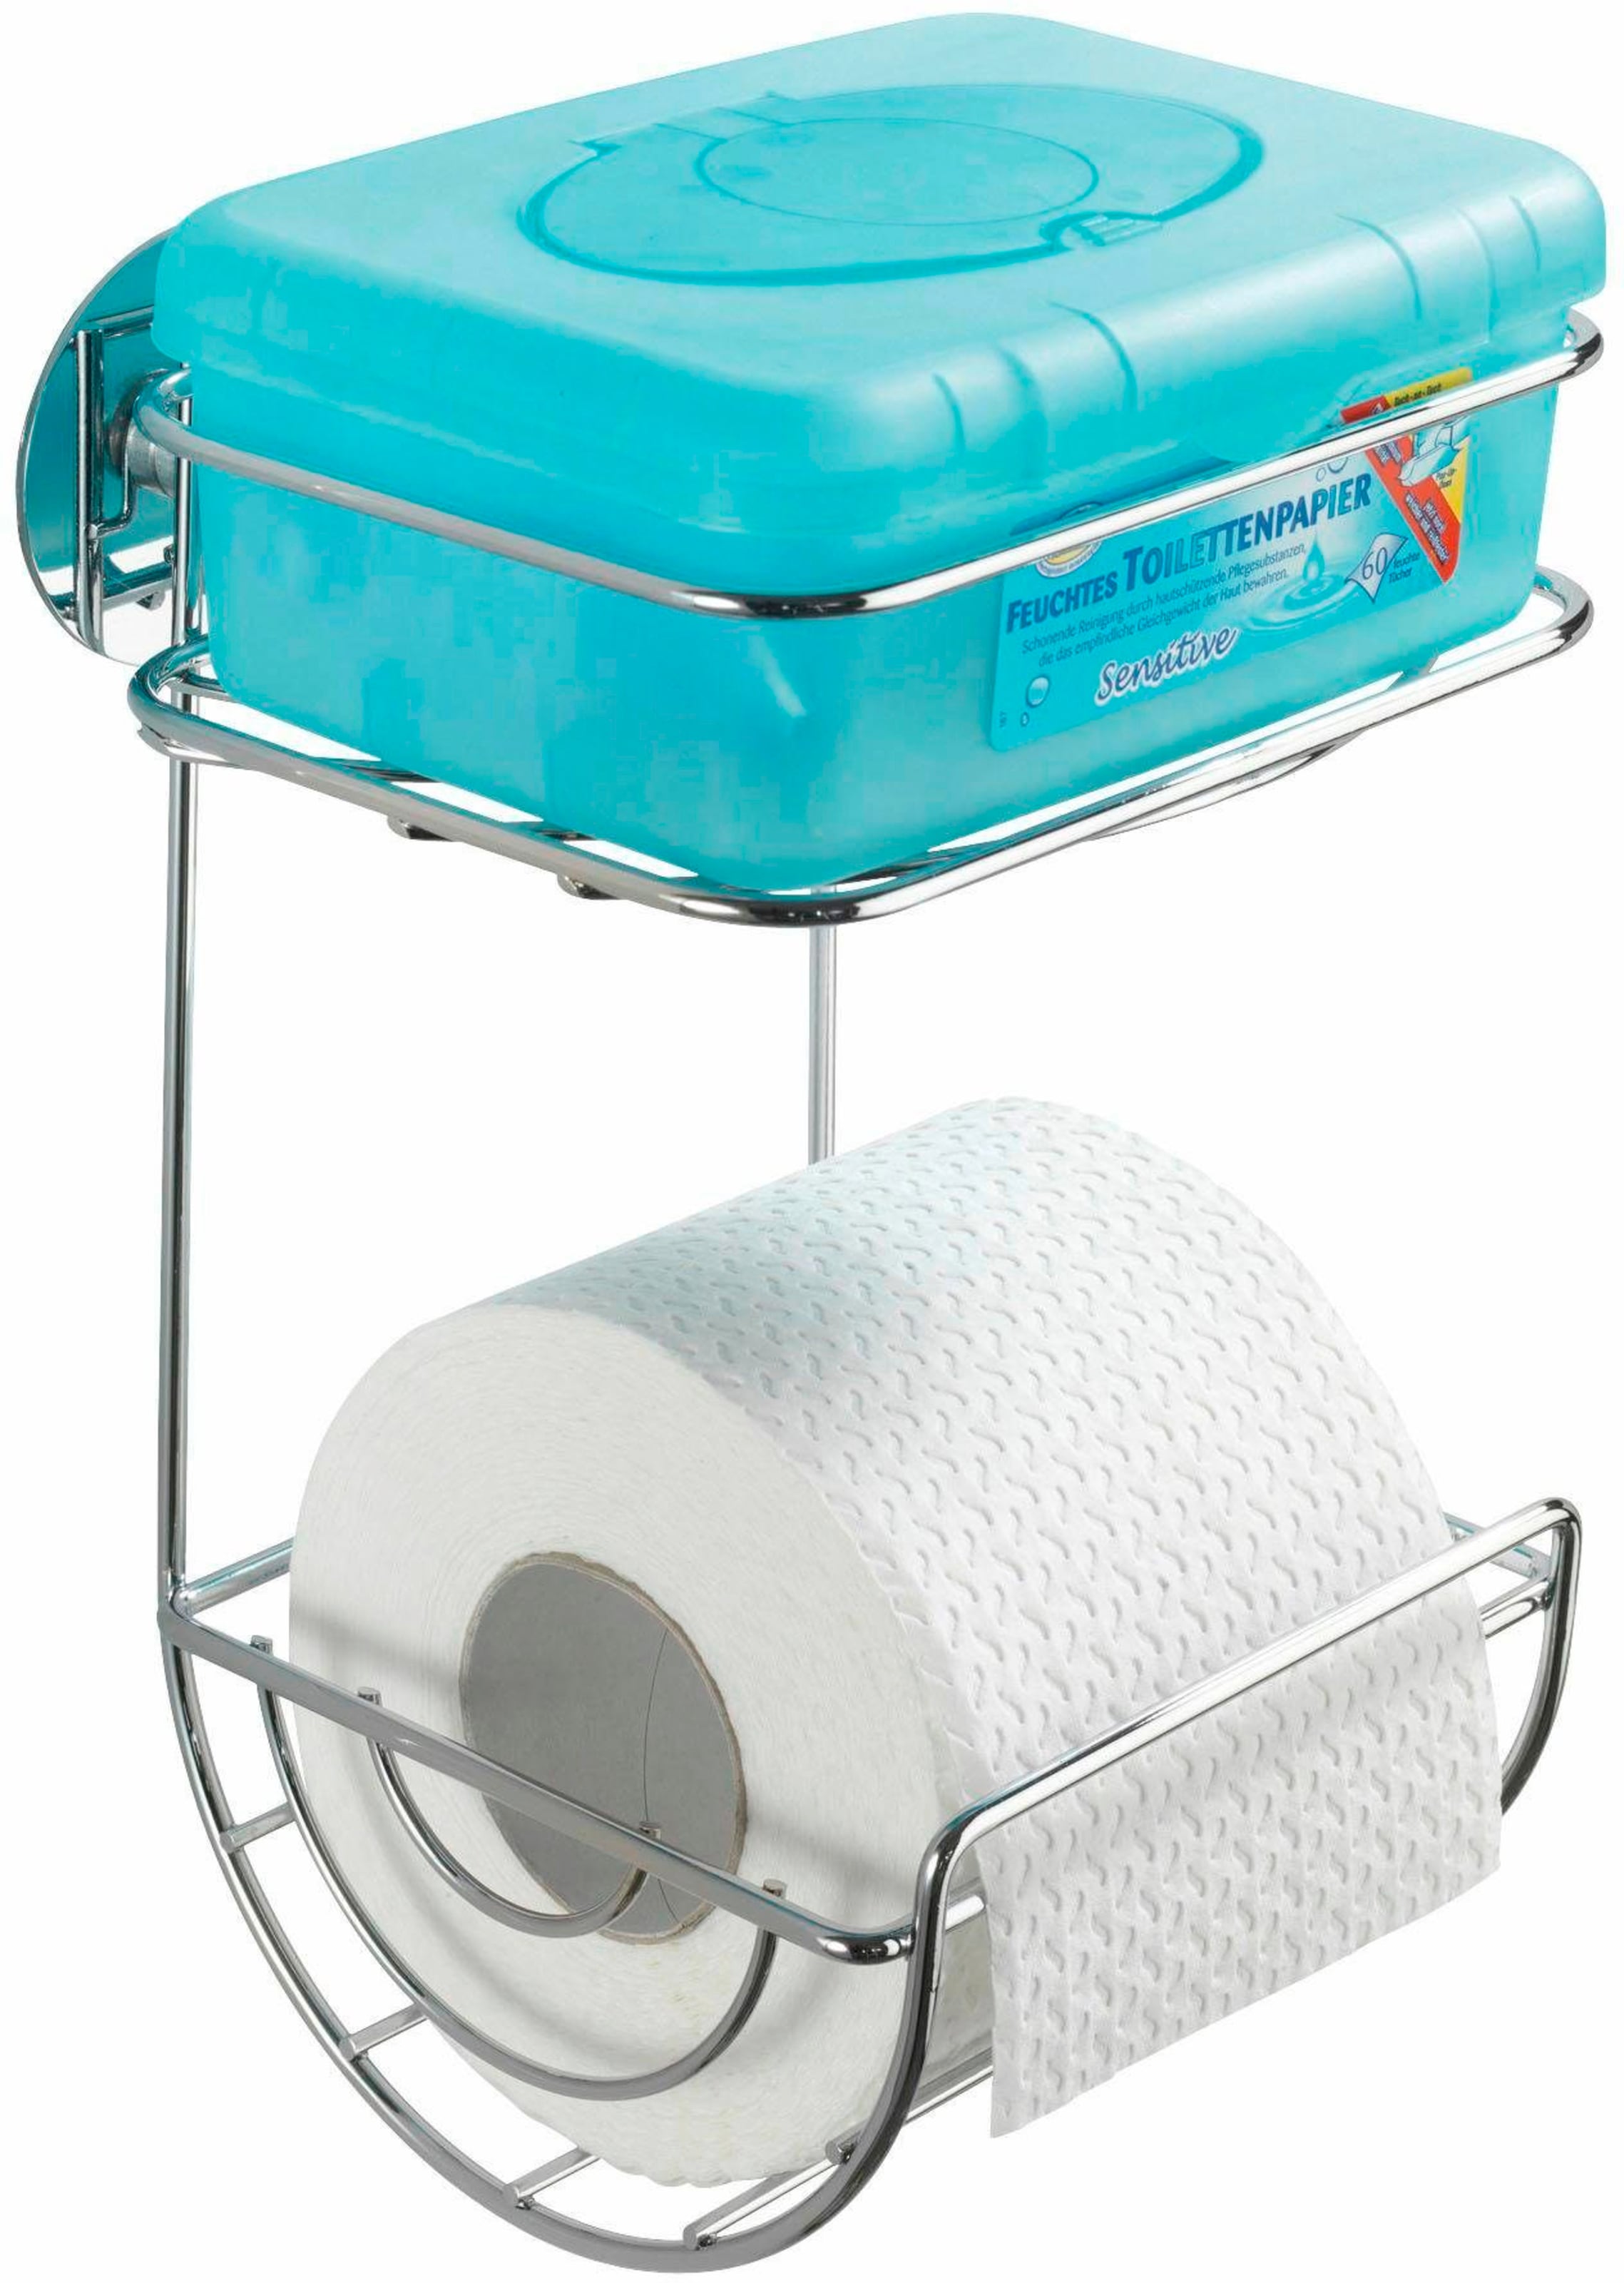 OTTO Jetzt Toilettenpapierhalter online bei kaufen